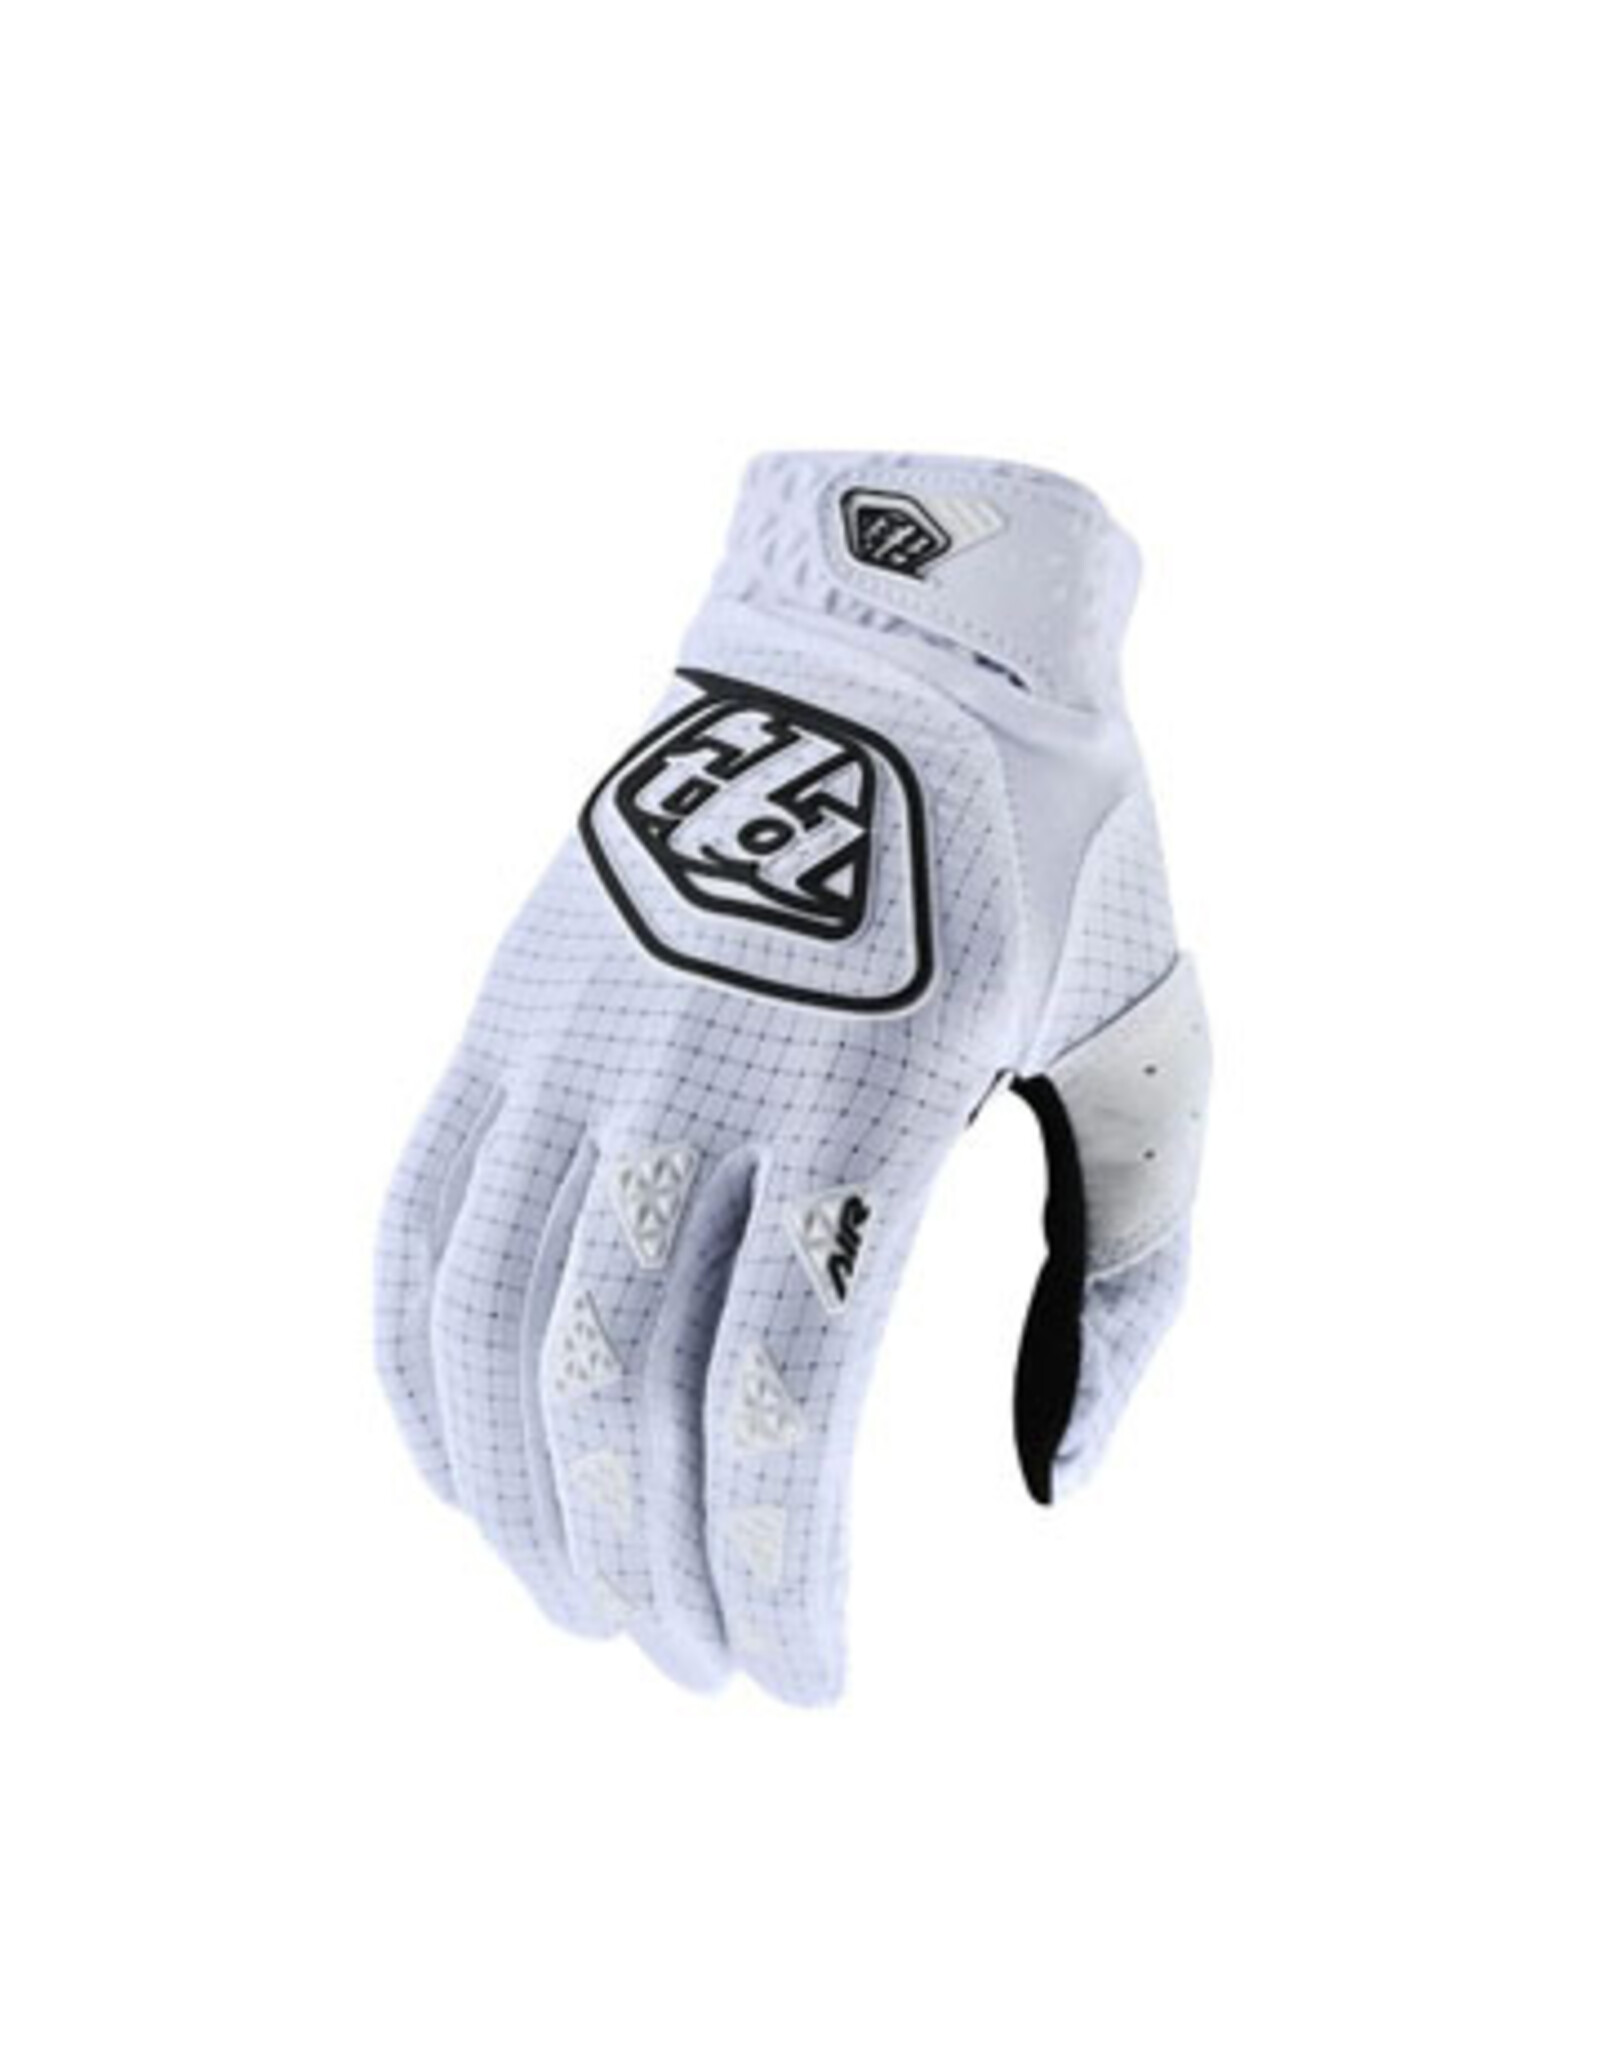 Troy Lee Designs Troy Lee Designs Air Glove White